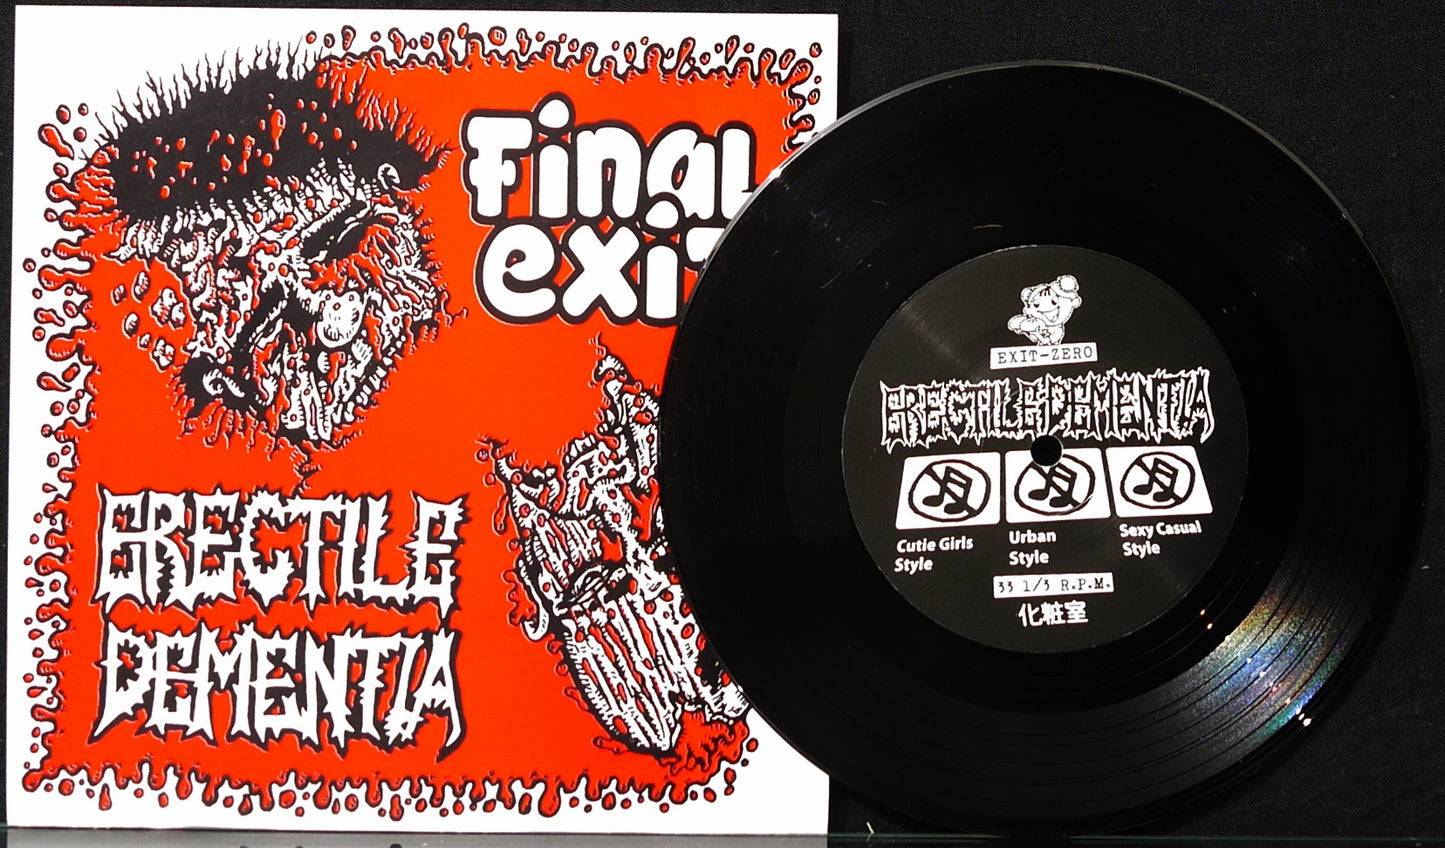 ERECTILE DEMENTIA / FINAL EXIT - Split 7"